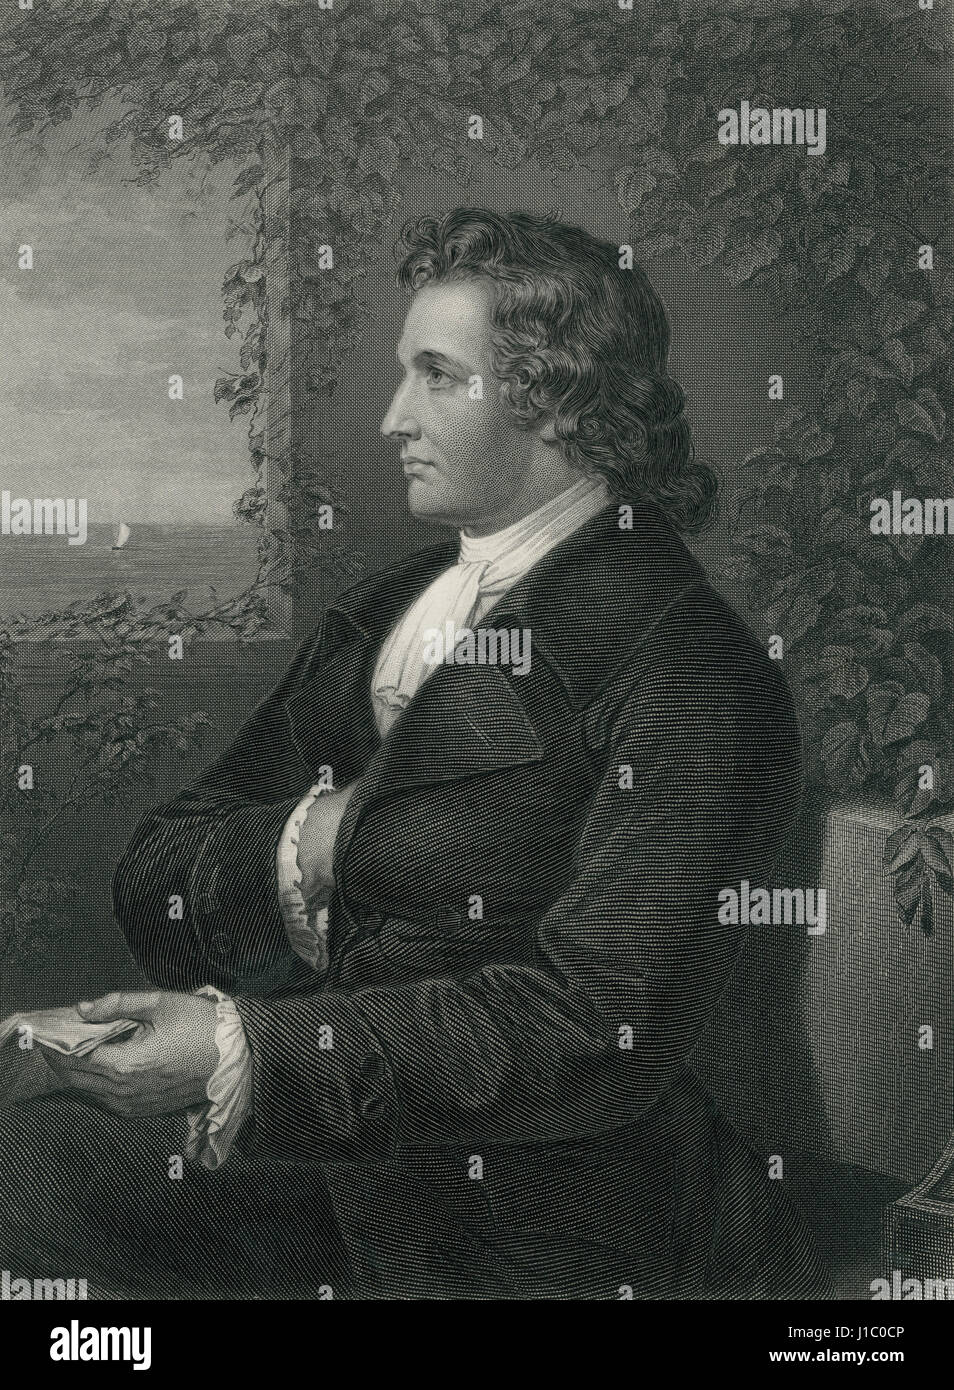 Johann Wolfgang von Goethe (Francoforte sul Meno 1749 - Weimar 1832), scrittore tedesco e statista, Ritratto, incisione da una fotografia da Fr. Bruckmann, 1870 Foto Stock